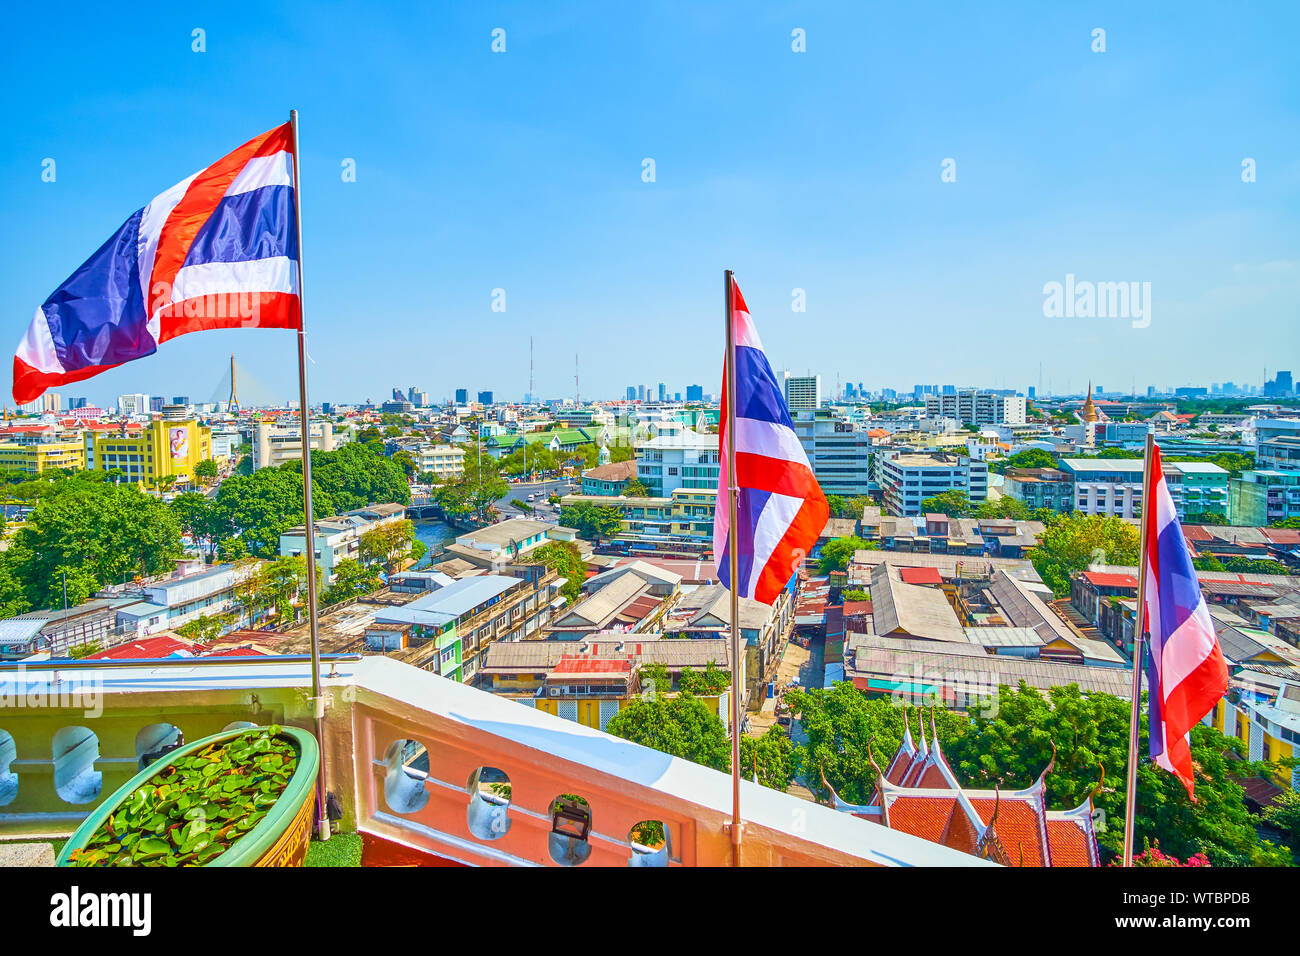 BANGKOK, THAÏLANDE - 24 avril 2019 : l'agitant drapeaux nationaux de Thaïlande, attachés sur les grilles de Golden Mount Temple avec une vue sur le citysc Banque D'Images